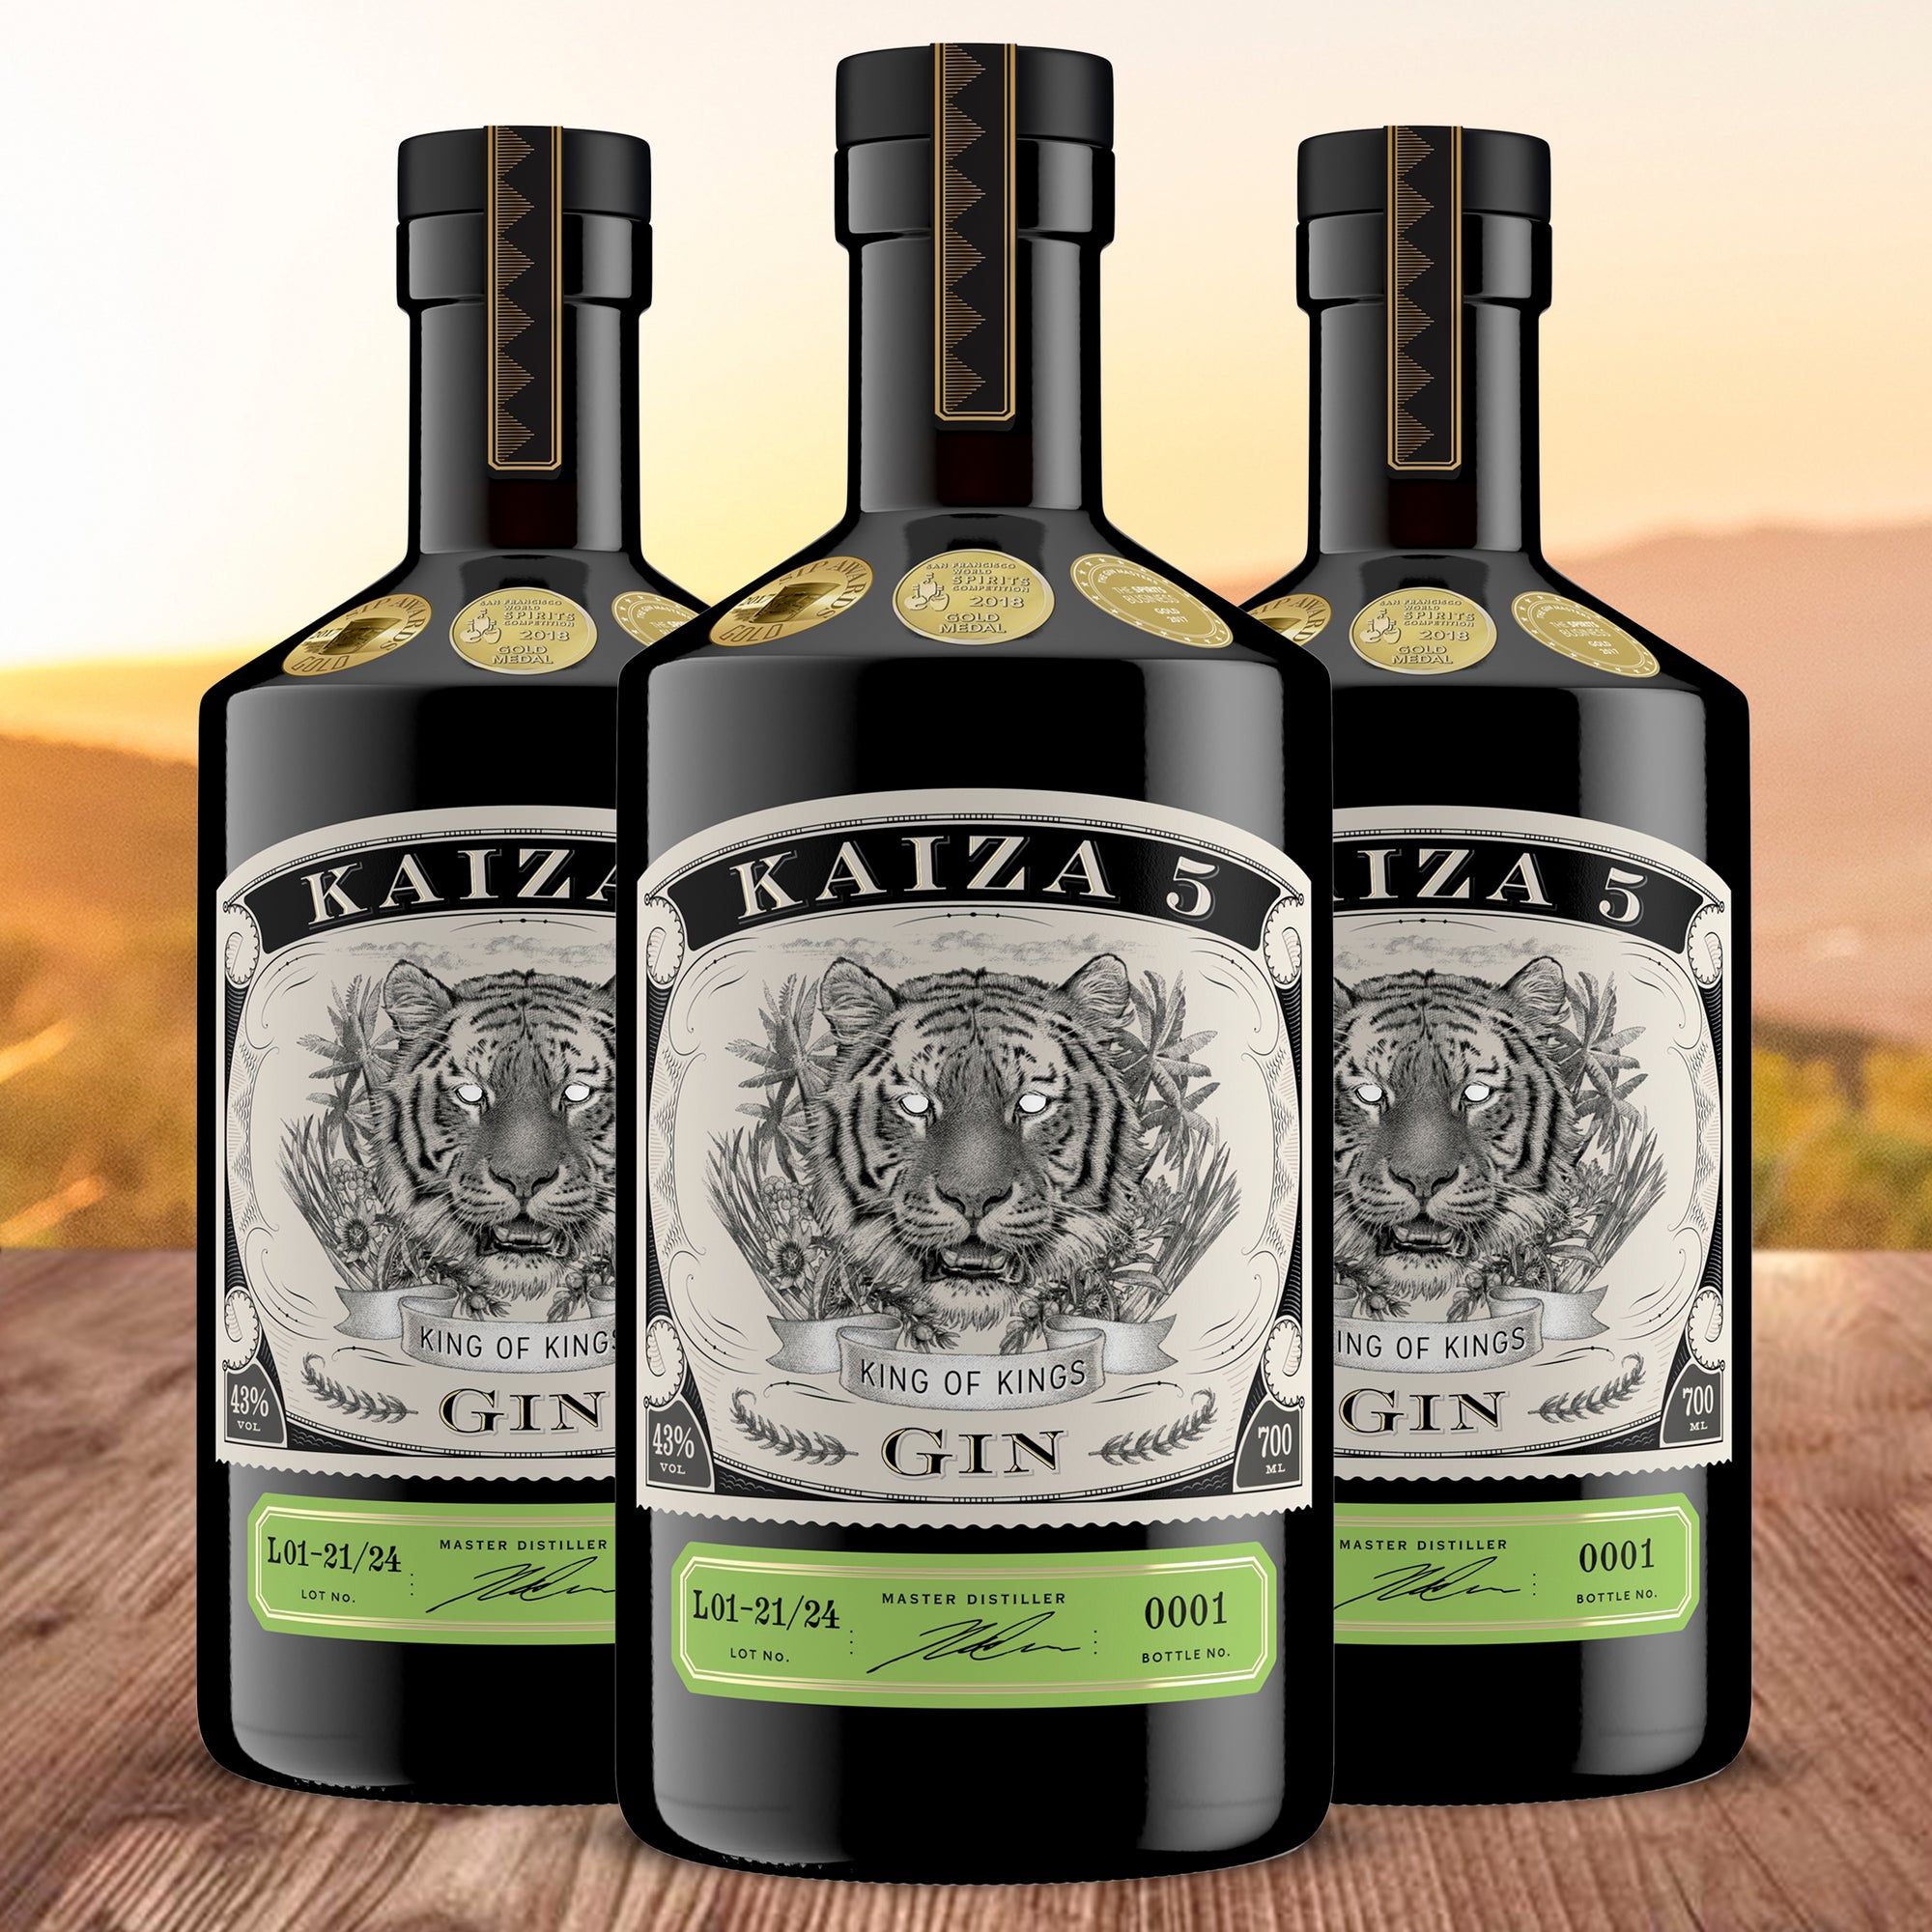 KAIZA 5 GIN - 43% | Der ausgezeichnete Premium-Gin aus Südafrika/Kapstadt